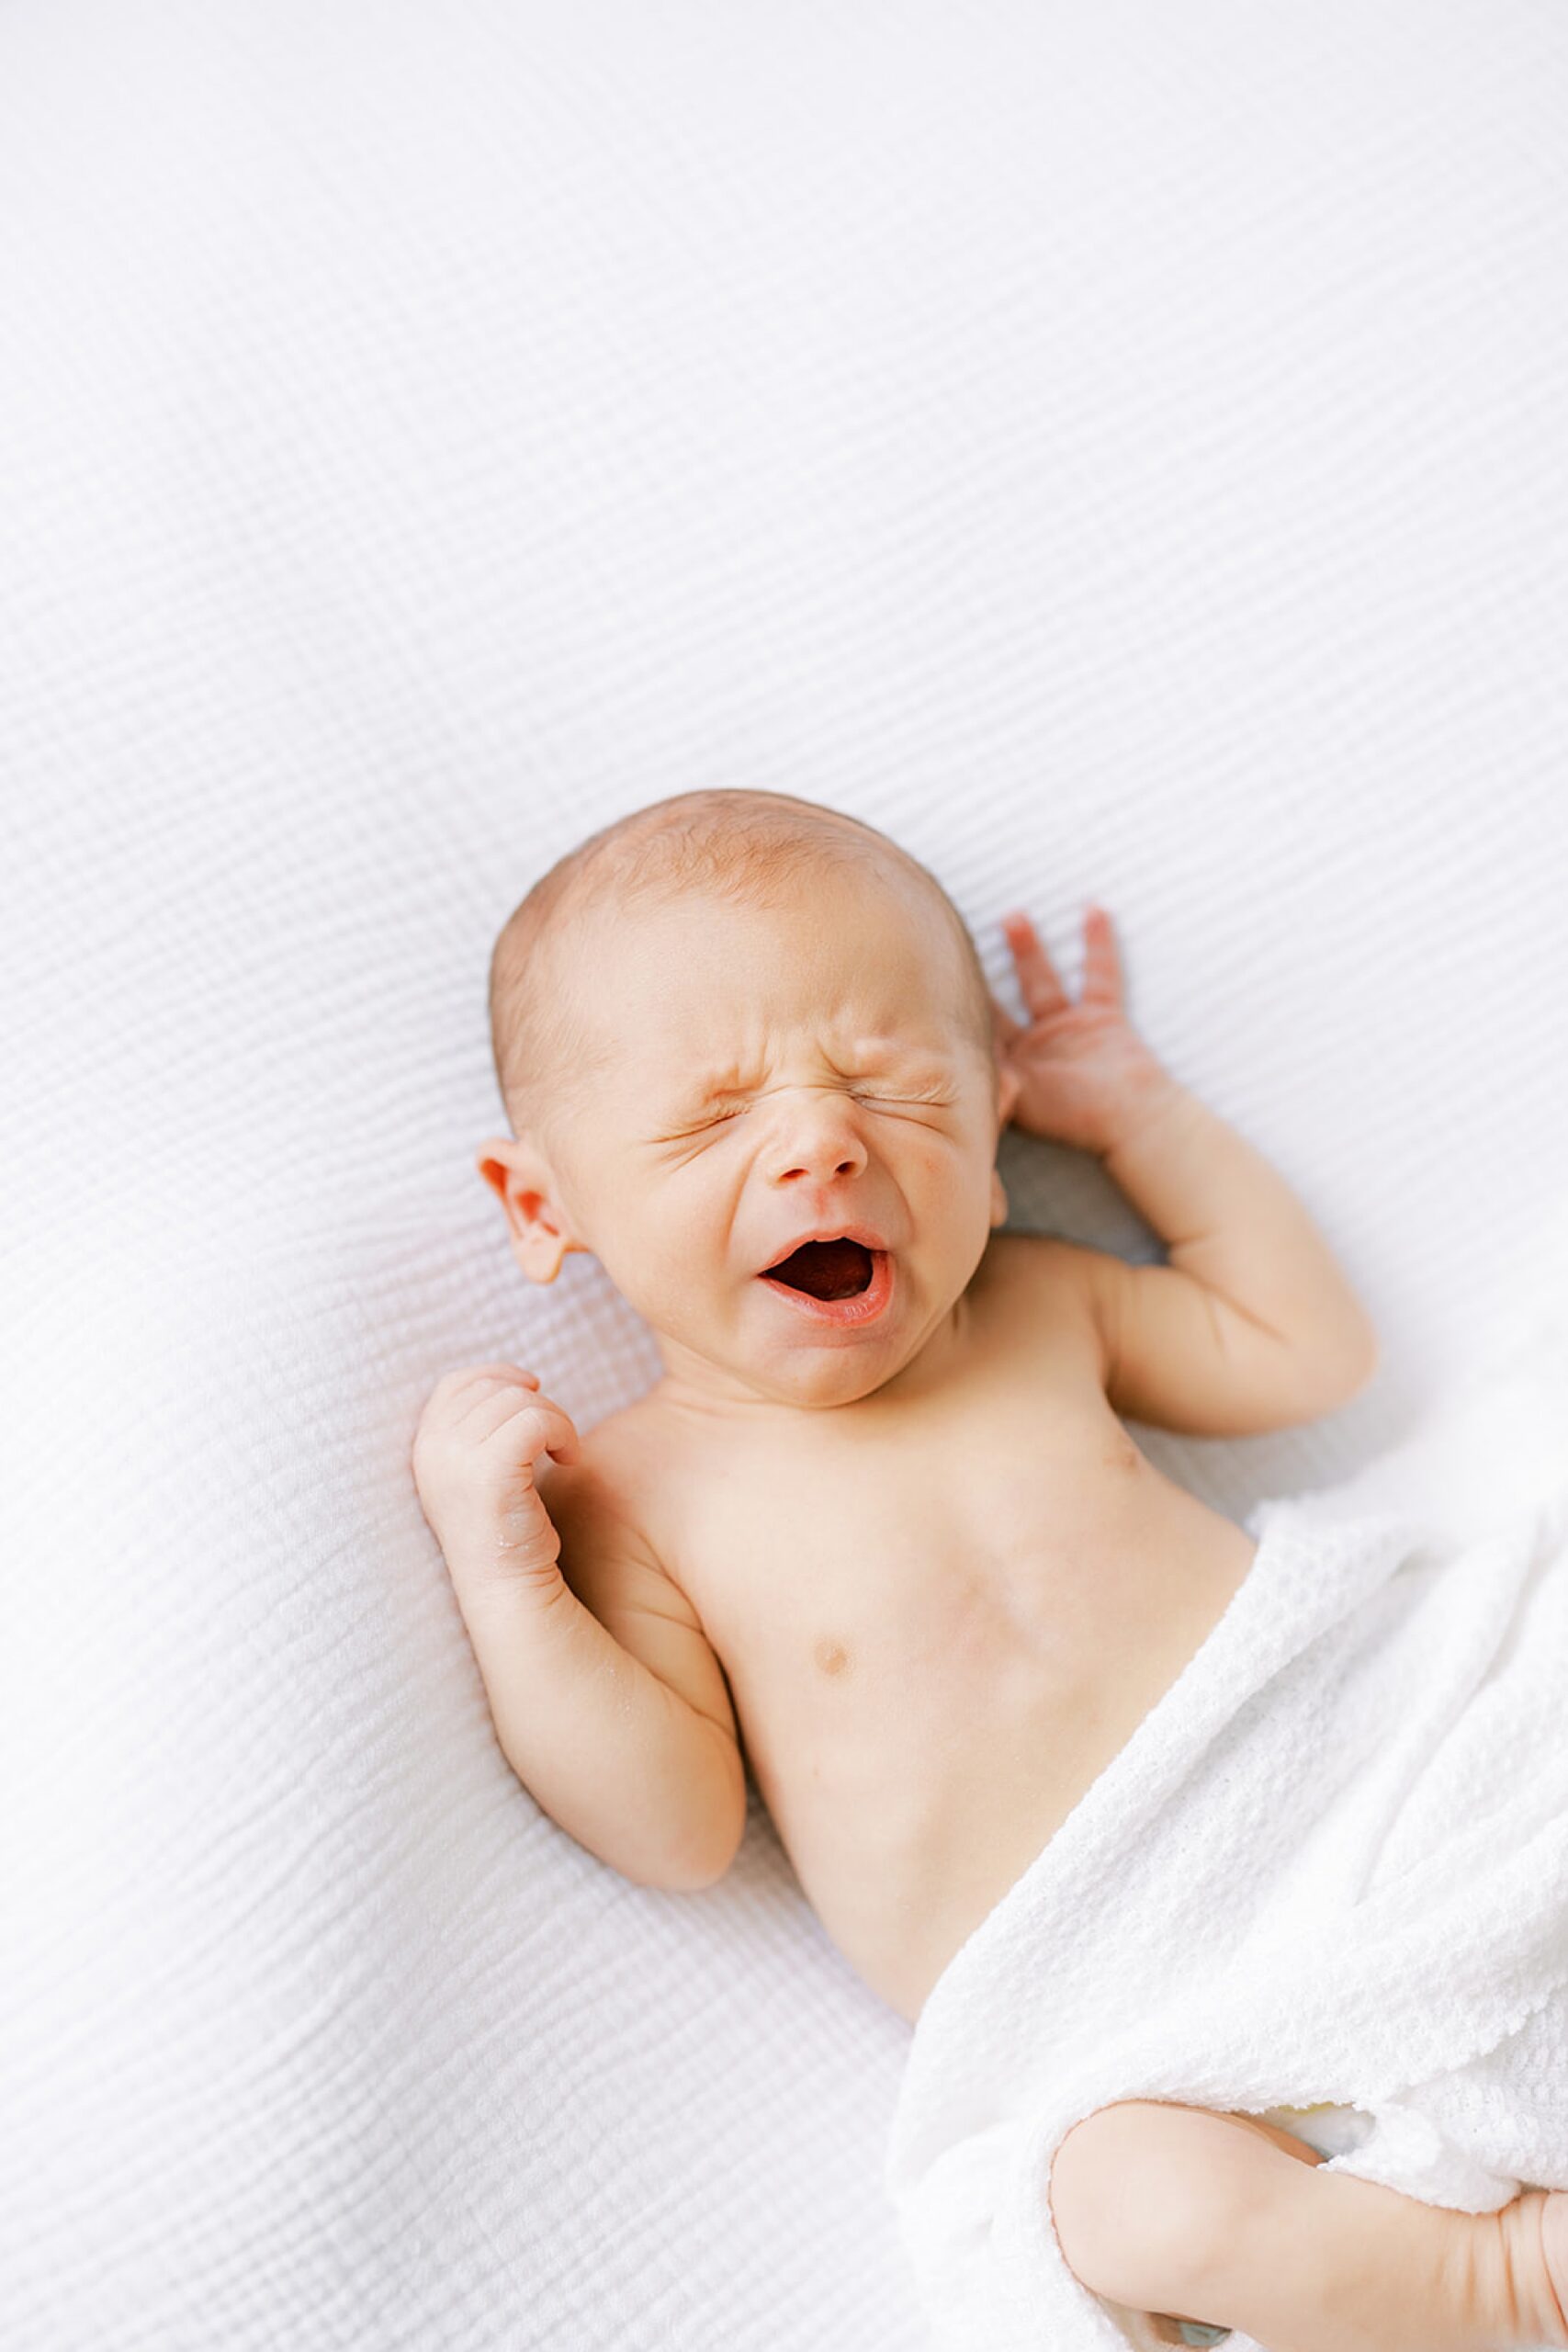 baby yawns during newborn photos in white blanket 